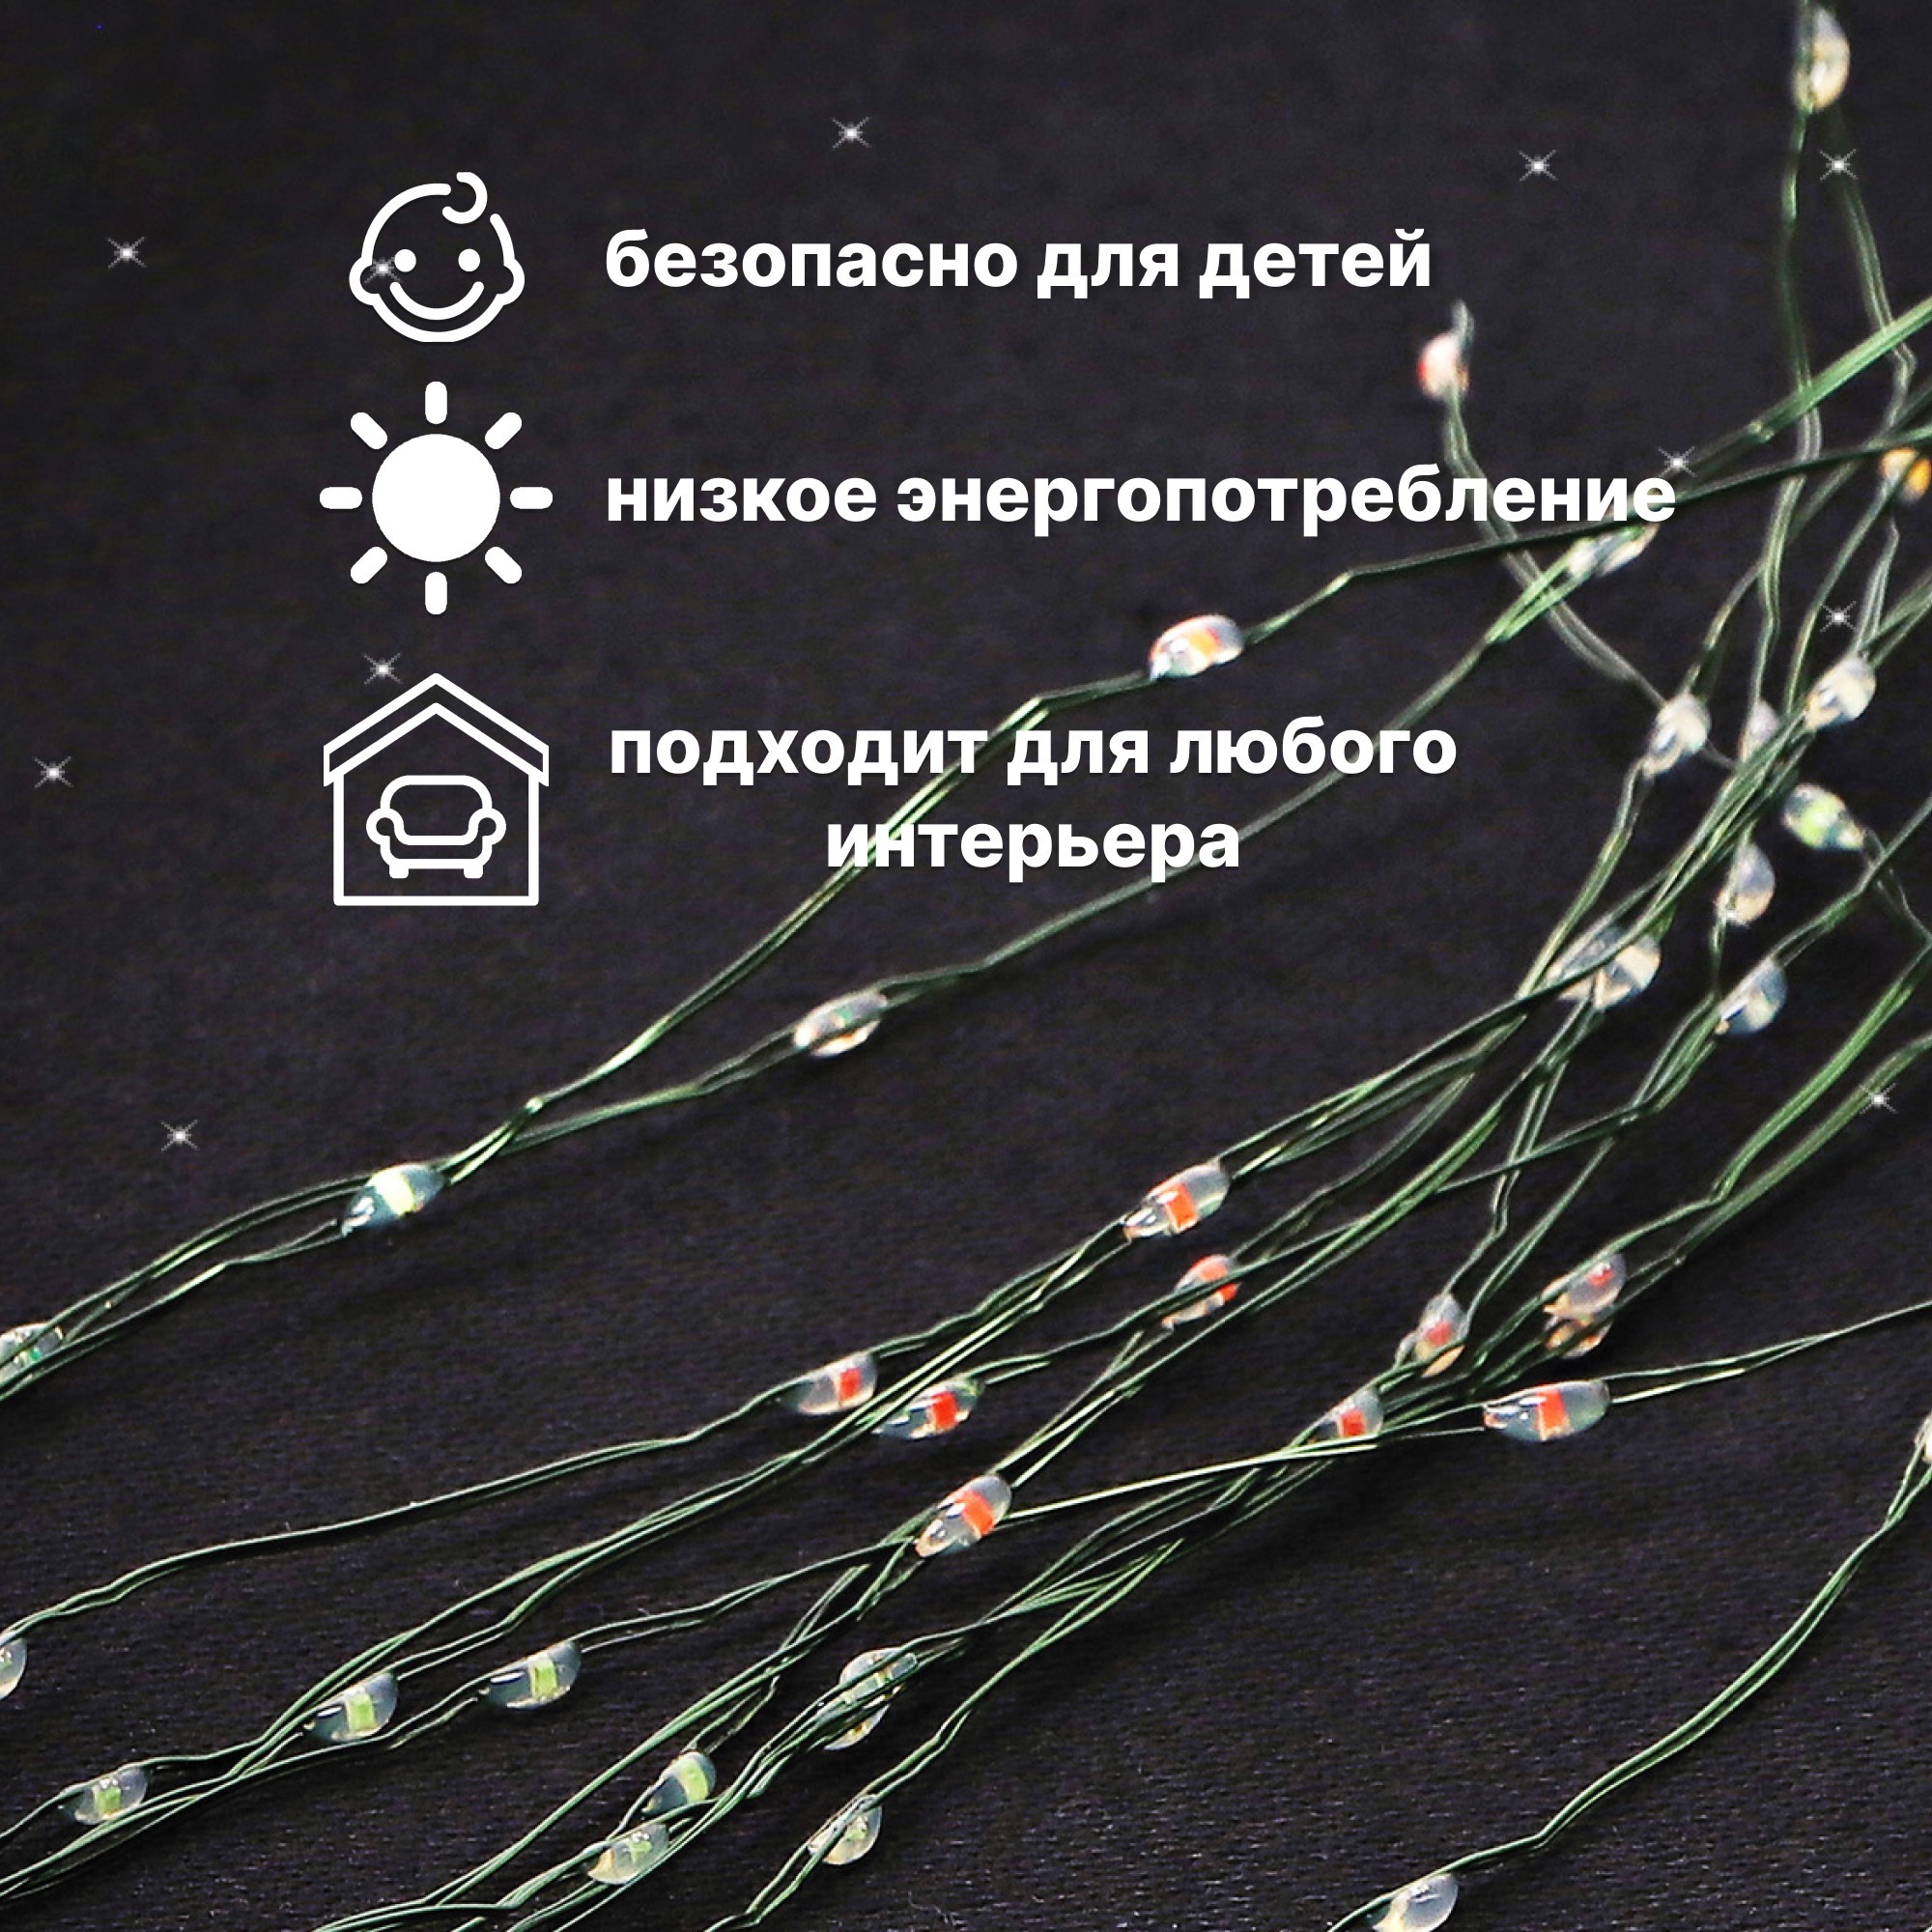 Электрогирлянда Best Technology 1080 LED 7,15 м со стартовым шнуром, цвет зеленый - фото 7